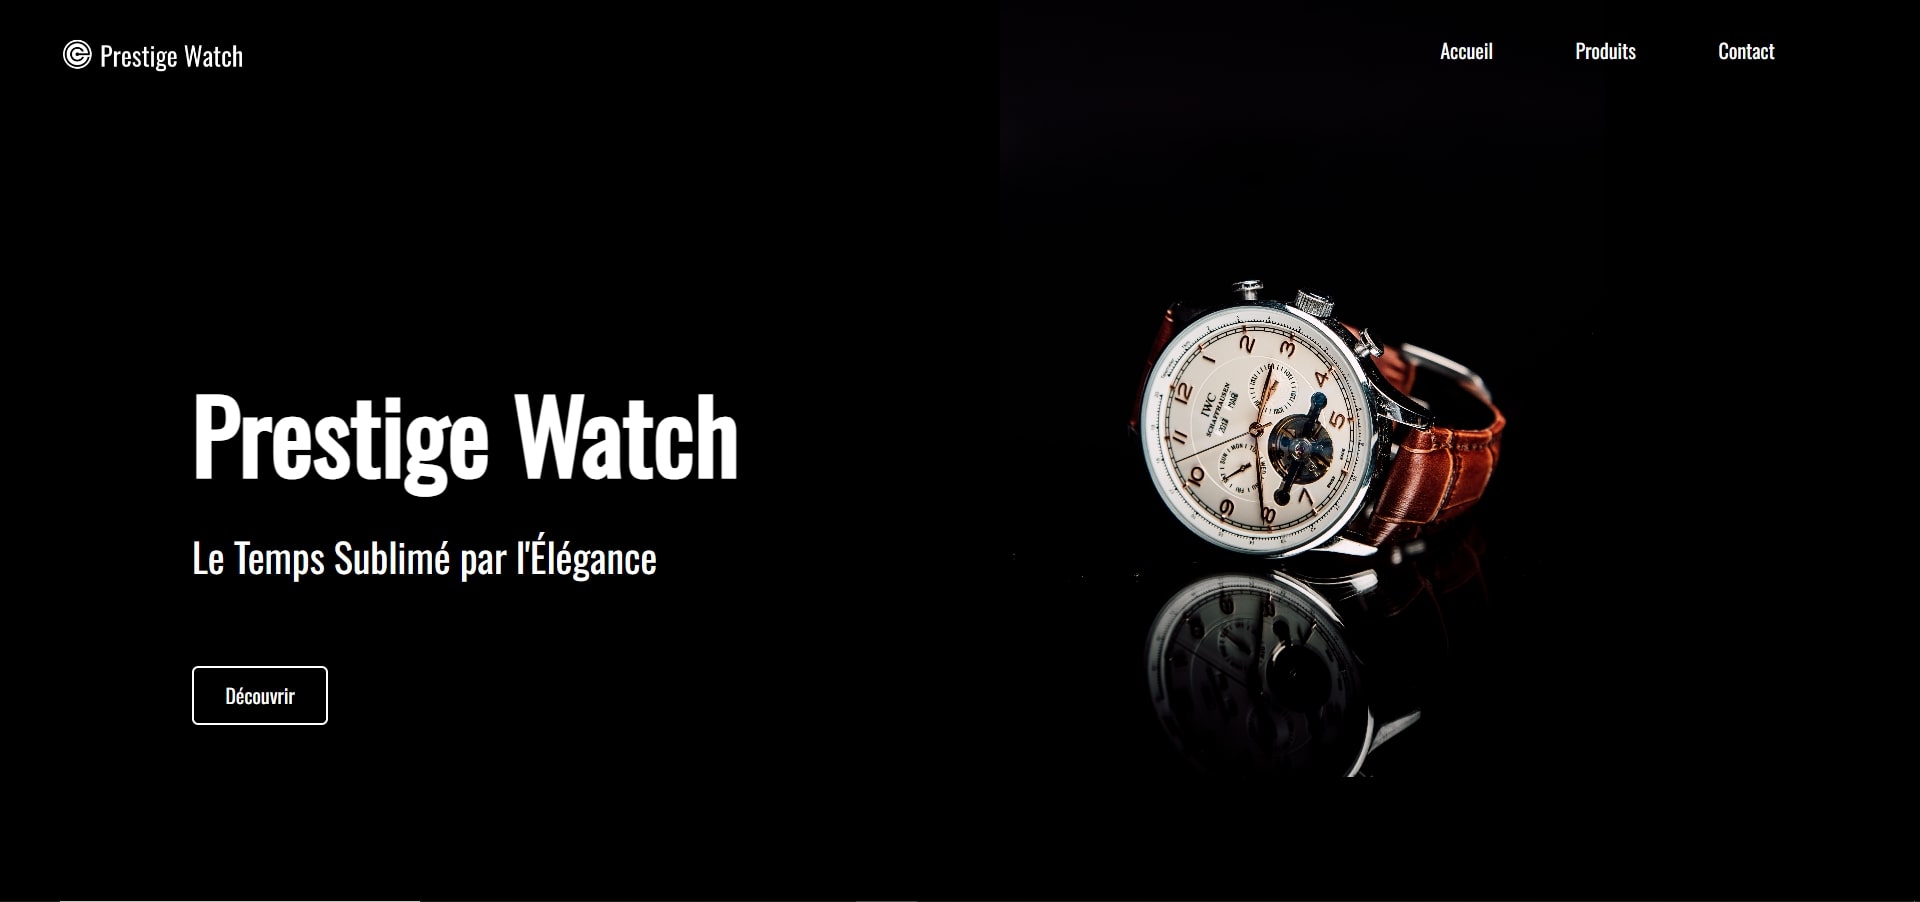 landing page pour une marque de montre prestige watch